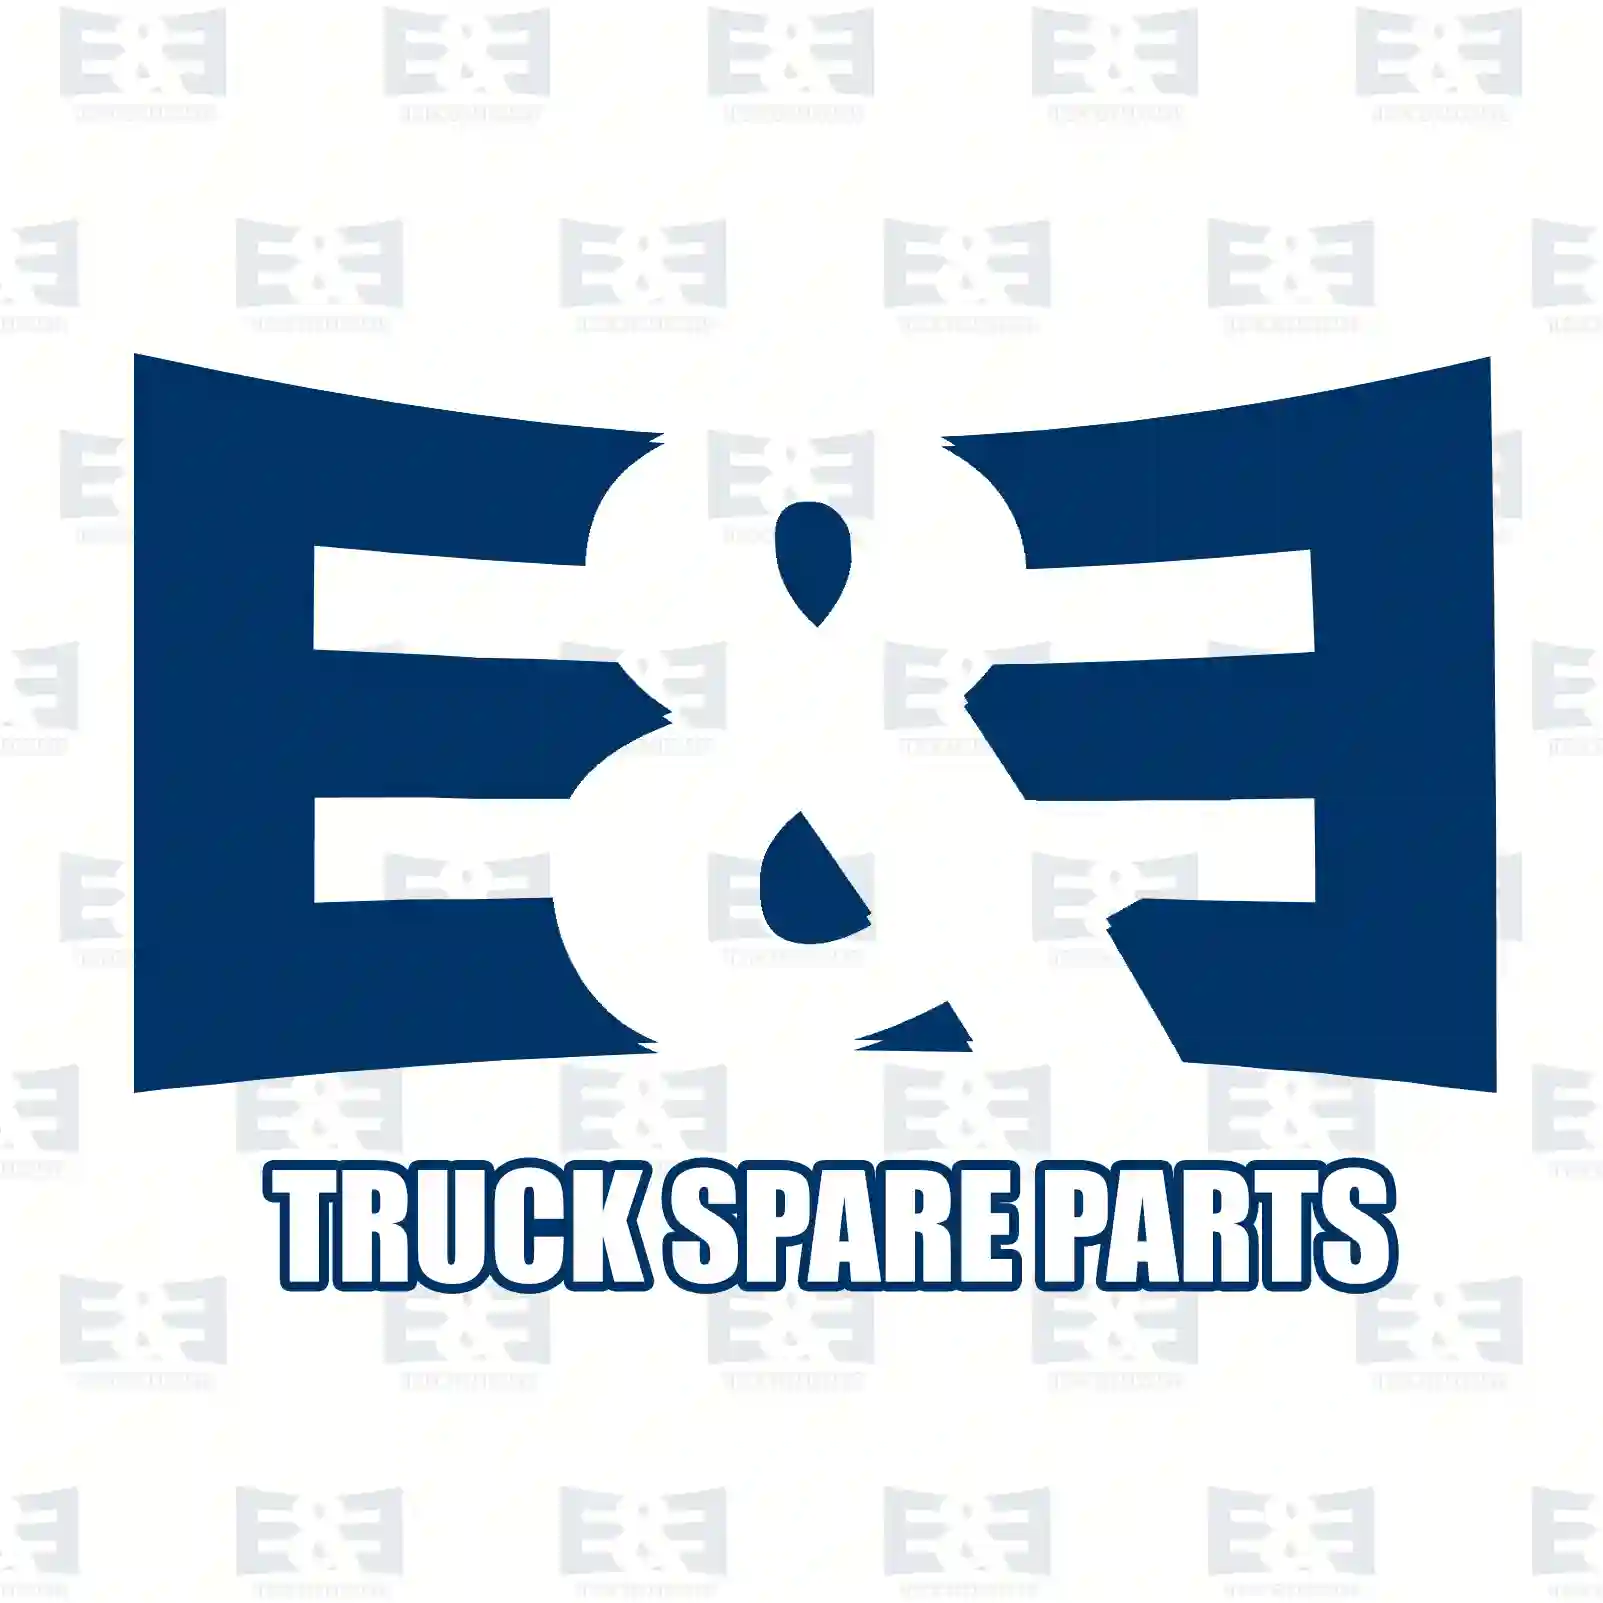 Oil seal, 2E2279429, 81965030323, , ||  2E2279429 E&E Truck Spare Parts | Truck Spare Parts, Auotomotive Spare Parts Oil seal, 2E2279429, 81965030323, , ||  2E2279429 E&E Truck Spare Parts | Truck Spare Parts, Auotomotive Spare Parts